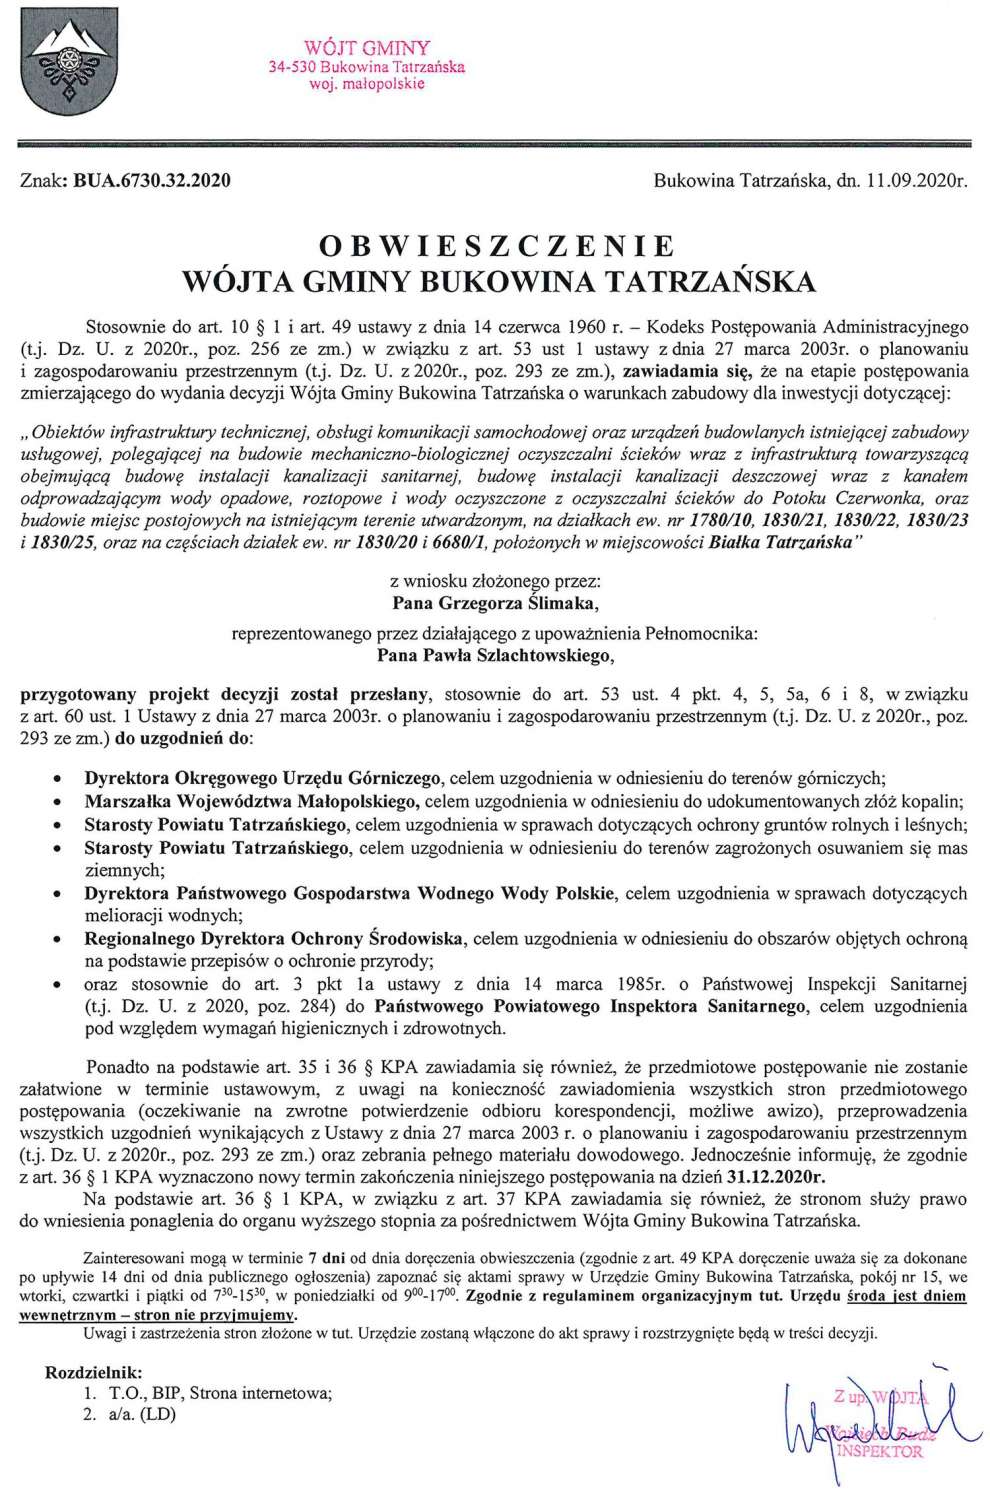 Obwieszczenie Wójta Gminy Bukowina Tatrzańska BUA 6730.32.2020